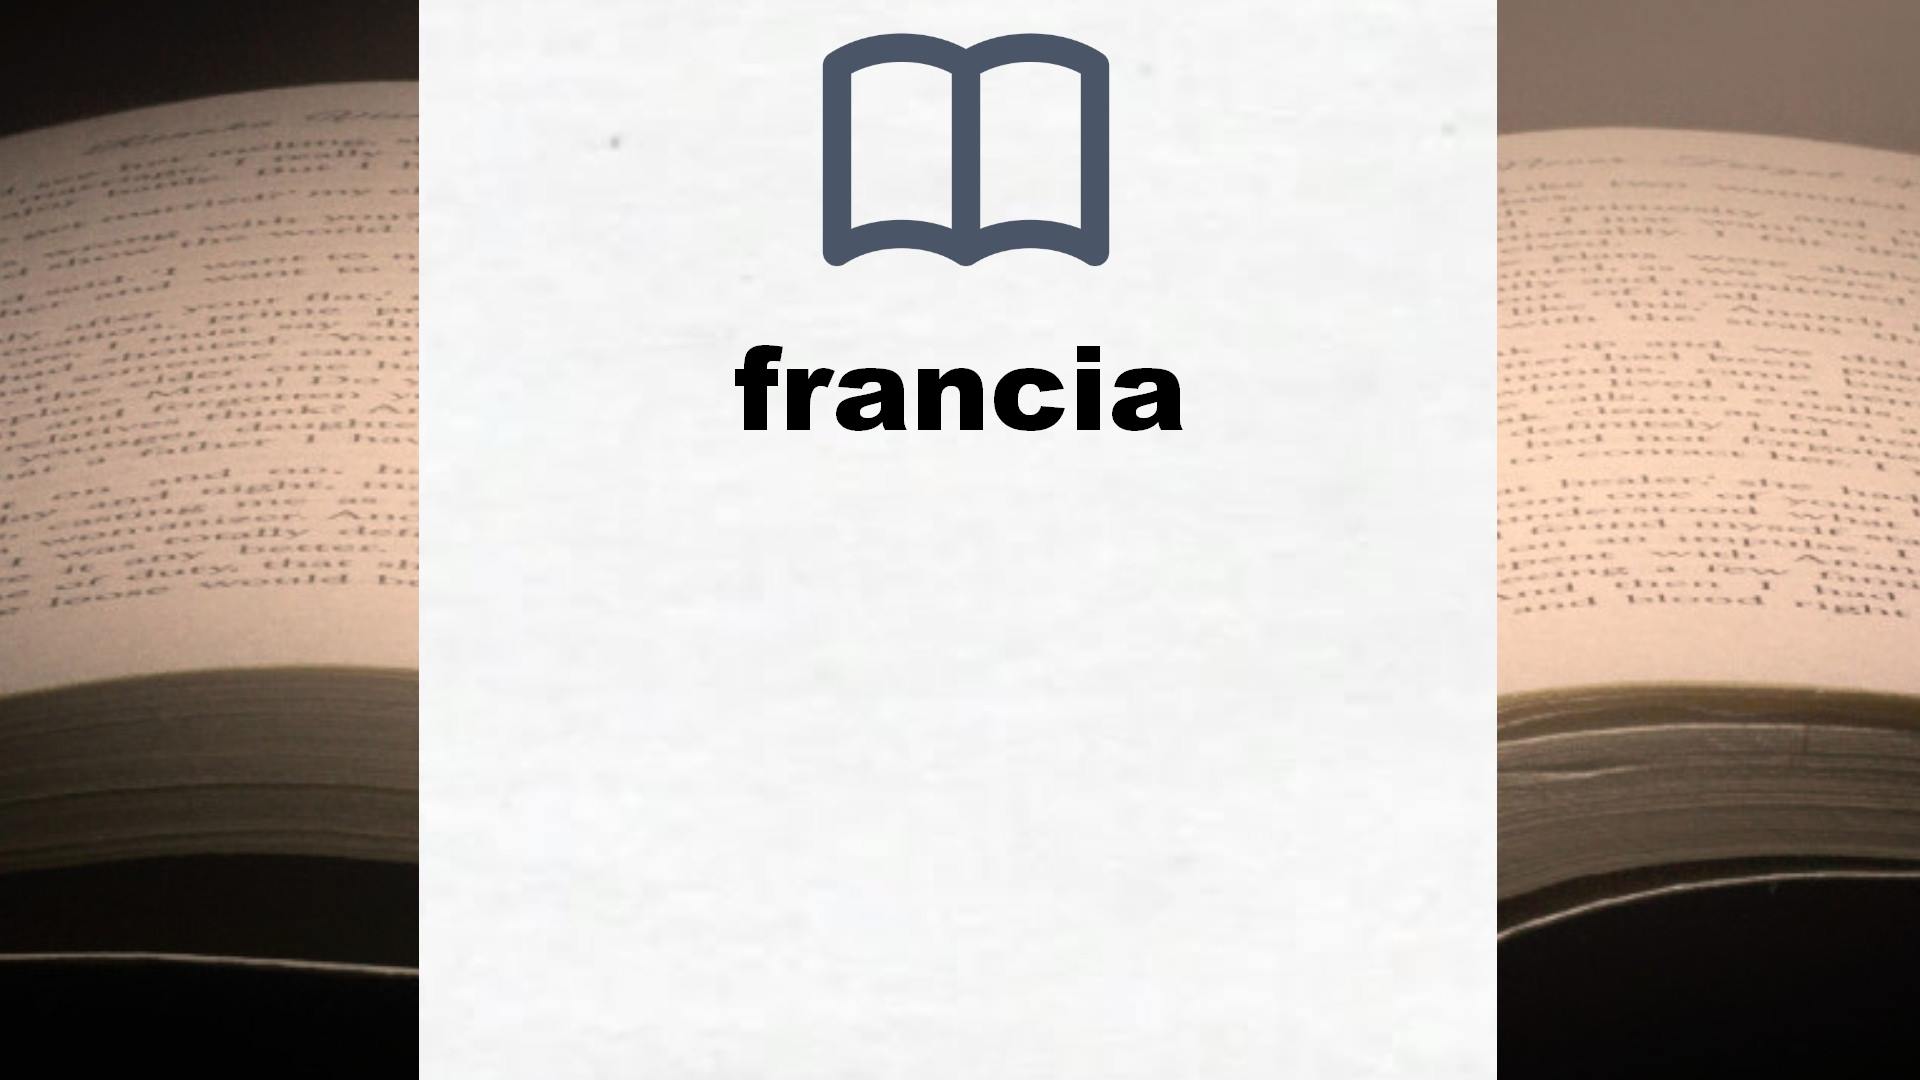 Libros sobre francia